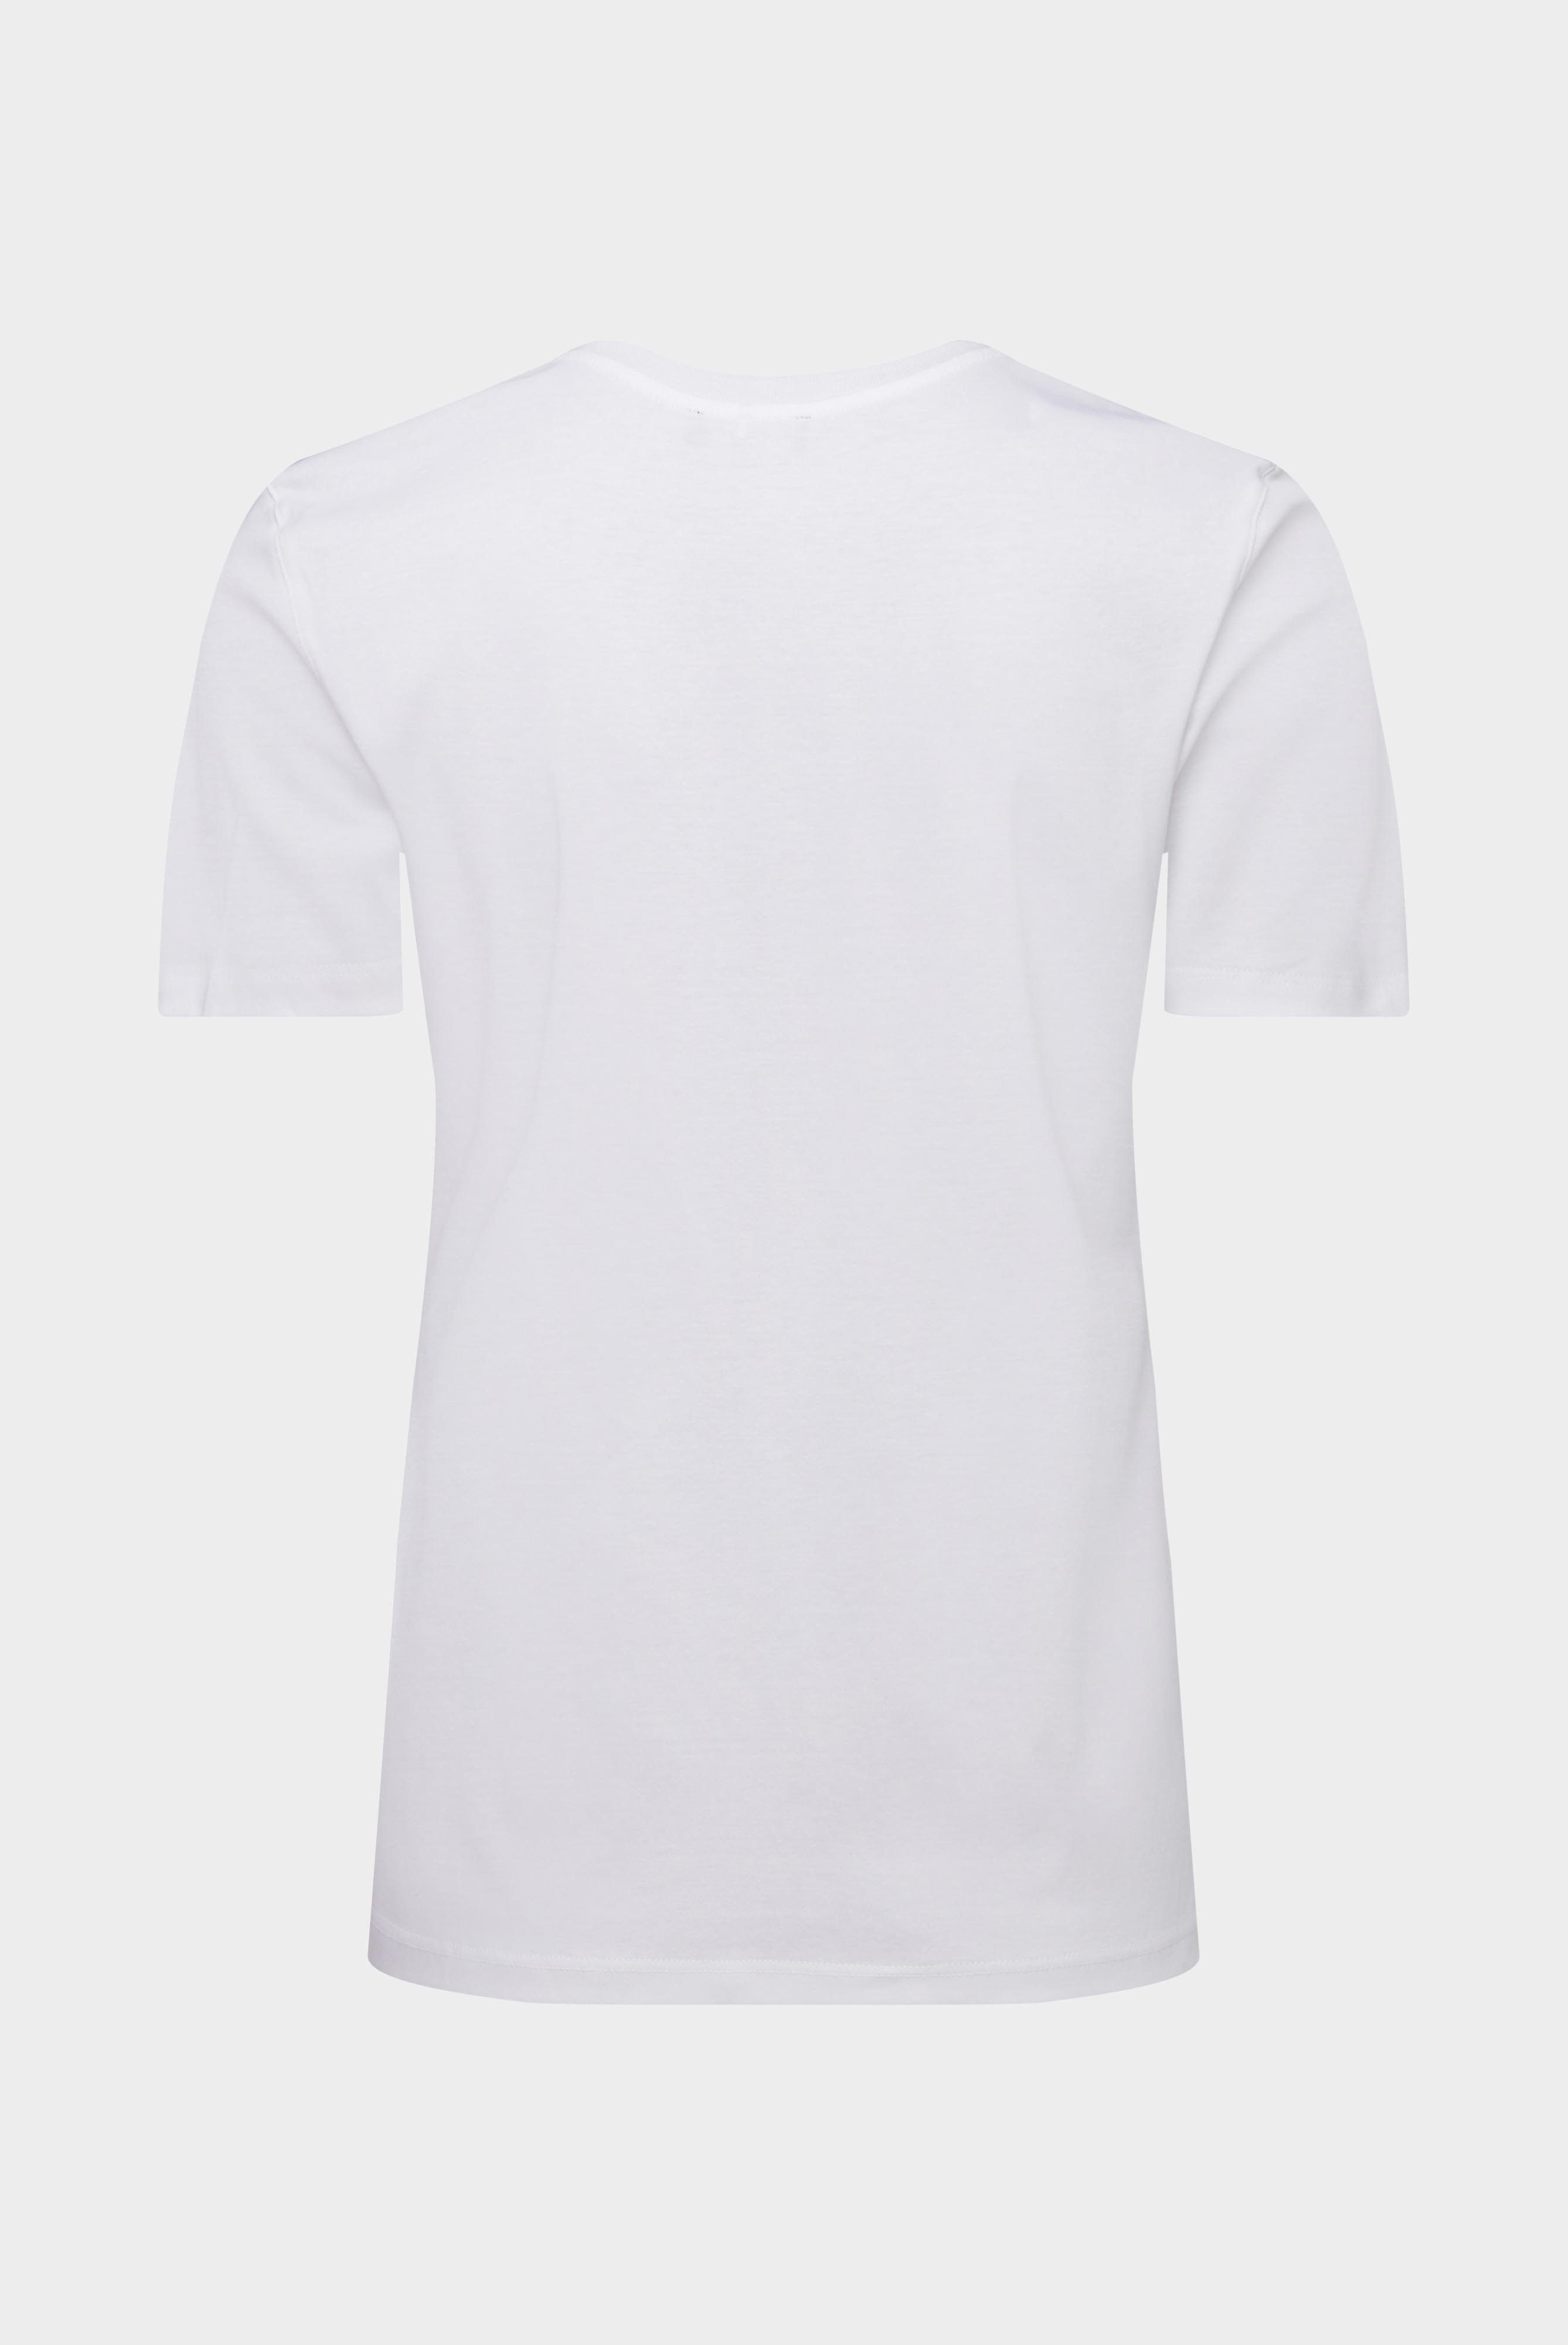 Tops & T-Shirts+Jersey T-Shirt+05.6384.18.180031.000.32